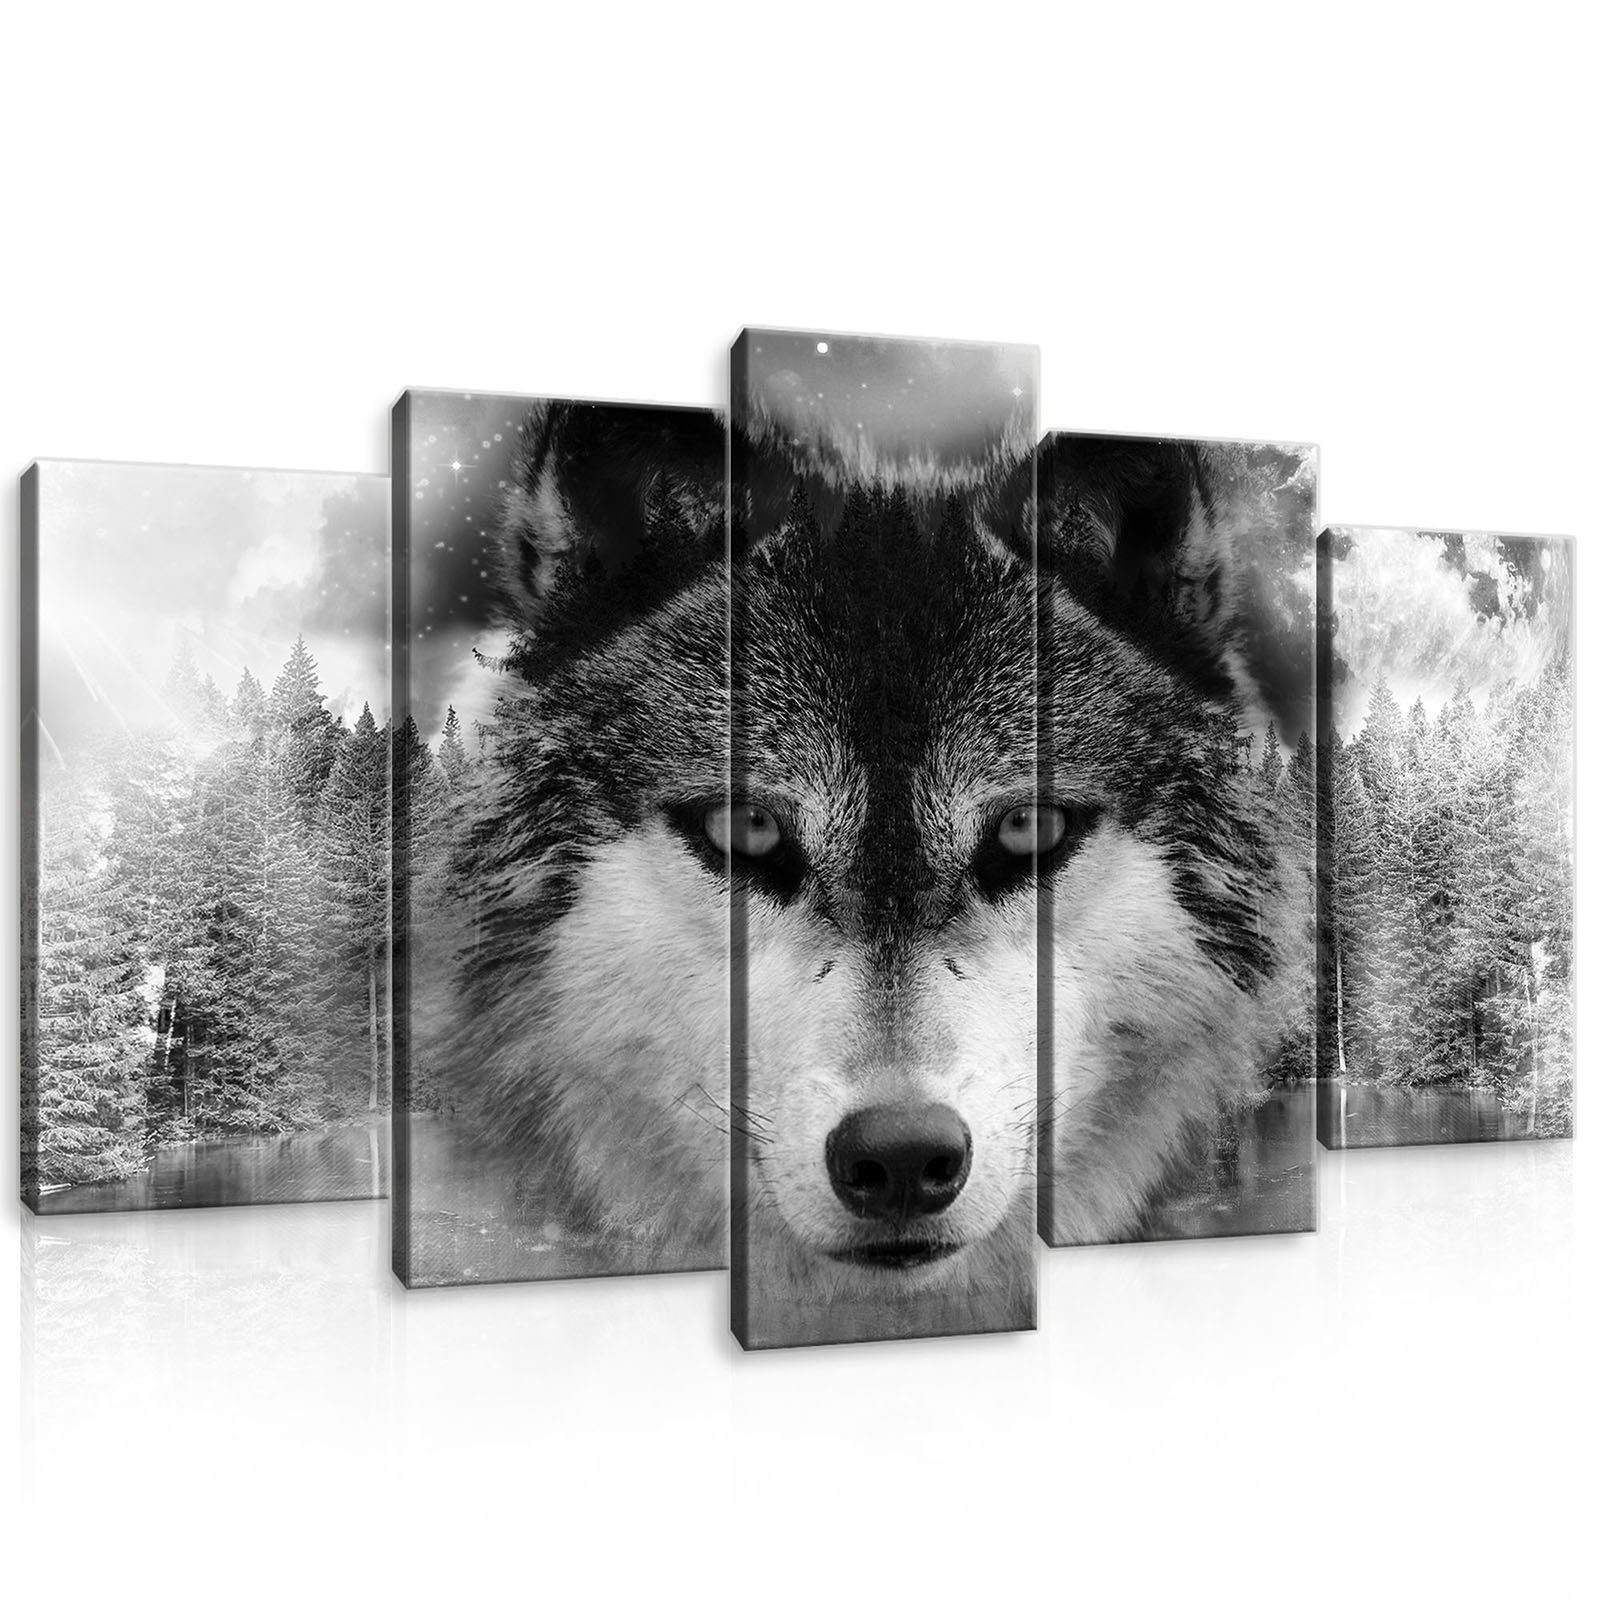 Wallarena Leinwandbild Wolf Tiere Wald Wohnzimmer Schlafzimmer Wandbild Modern, Natur (Set 5 teilig, 5 St), Wandbilder Leinwandbilder Leinwand Bilder Bild Groß Aufhängefertig